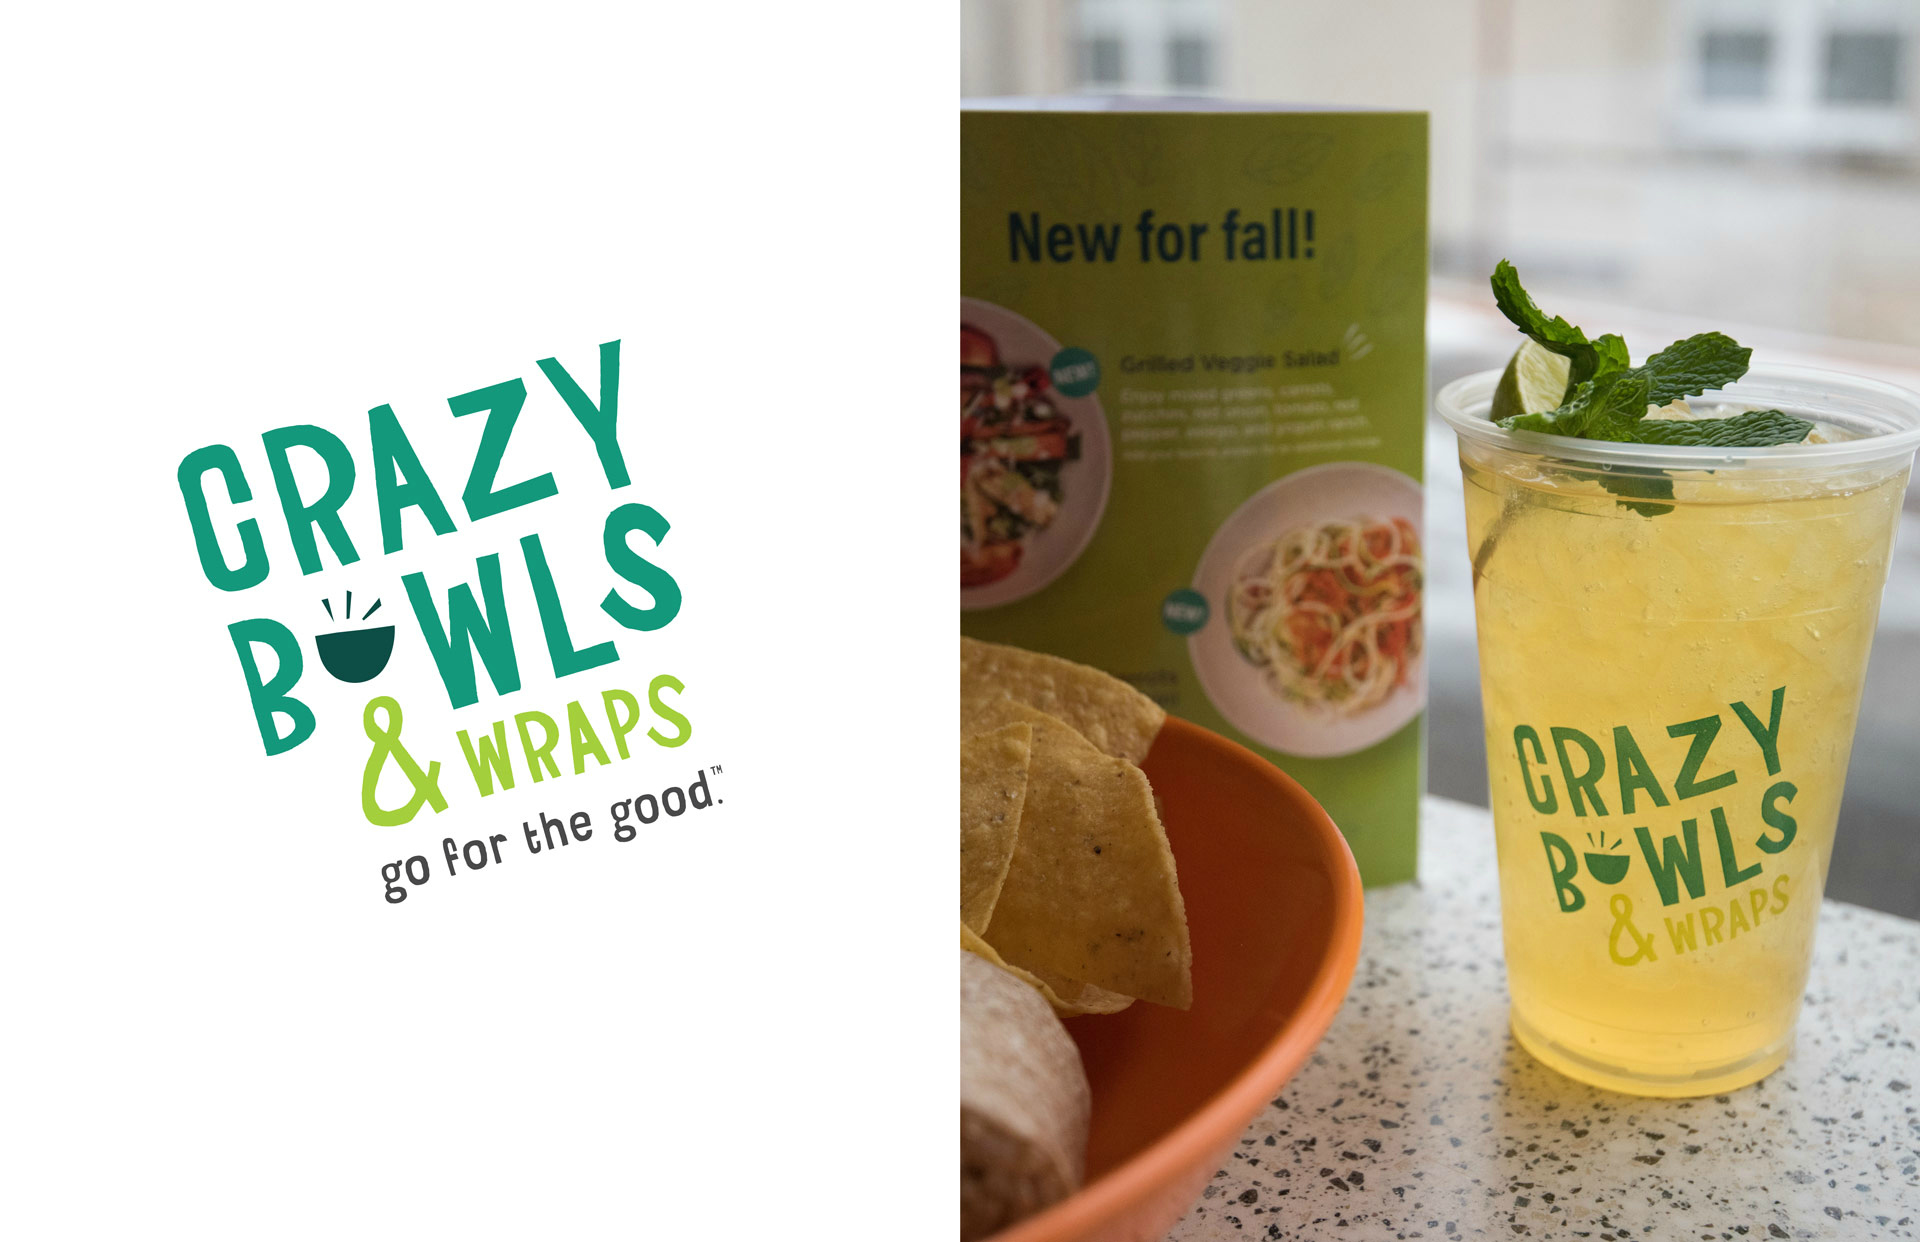 Crazy Bowls & Wraps Logo Design and Branding